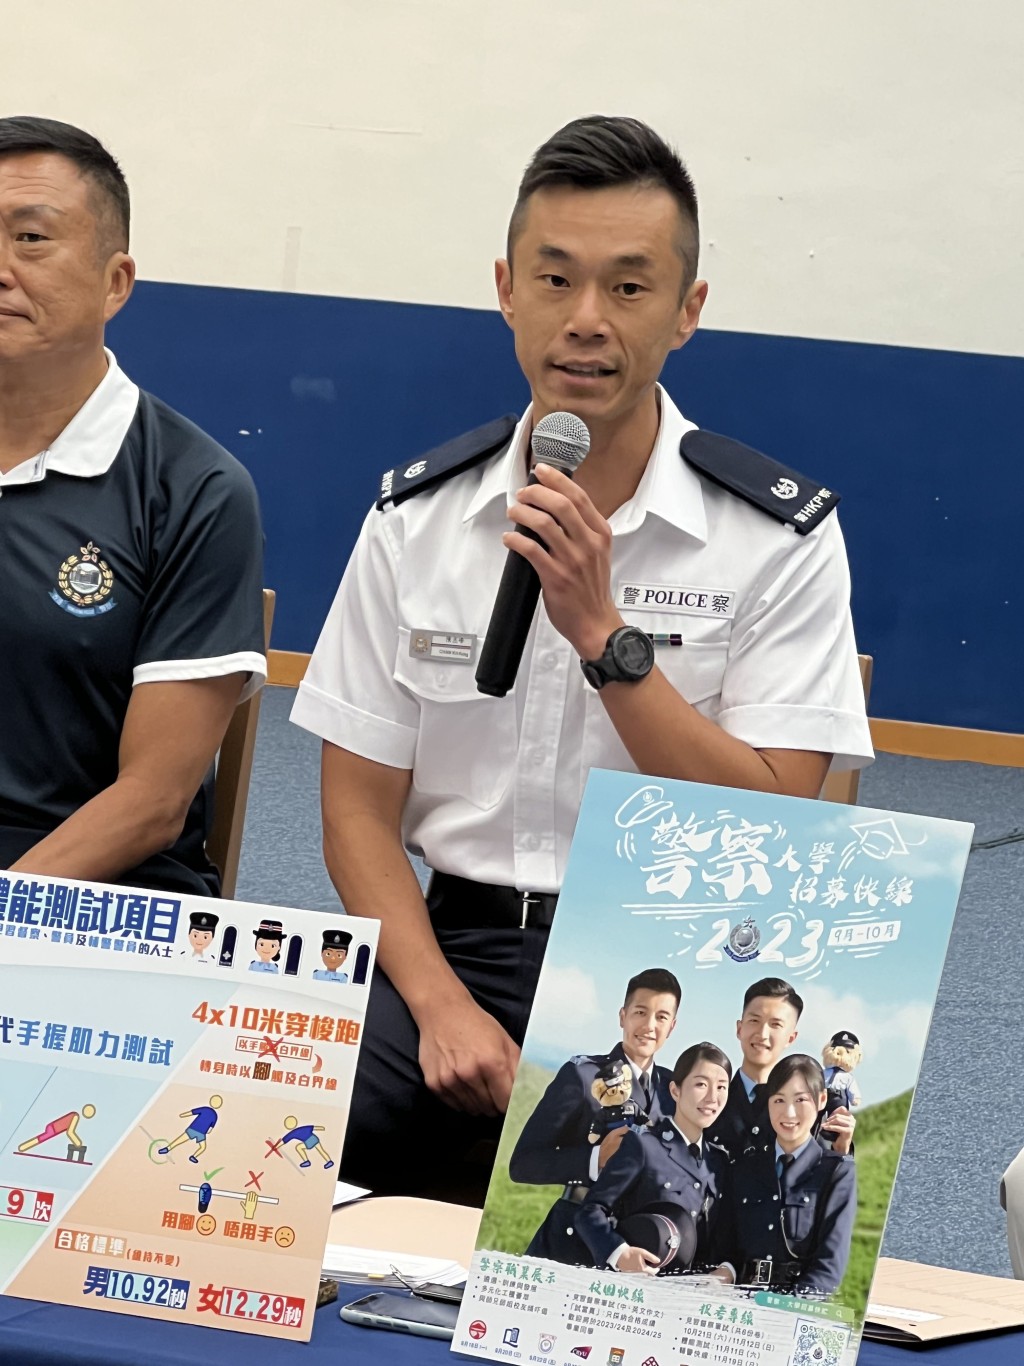 警方人事部招募组警司陈杰峰讲述详情。